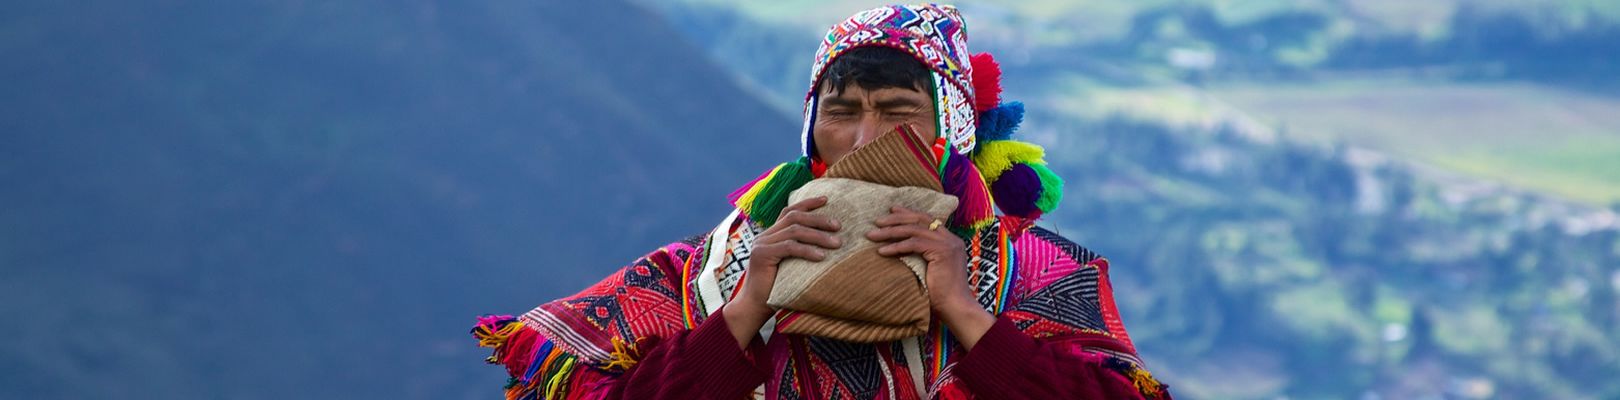 voyage pérou bolivie - musique andine